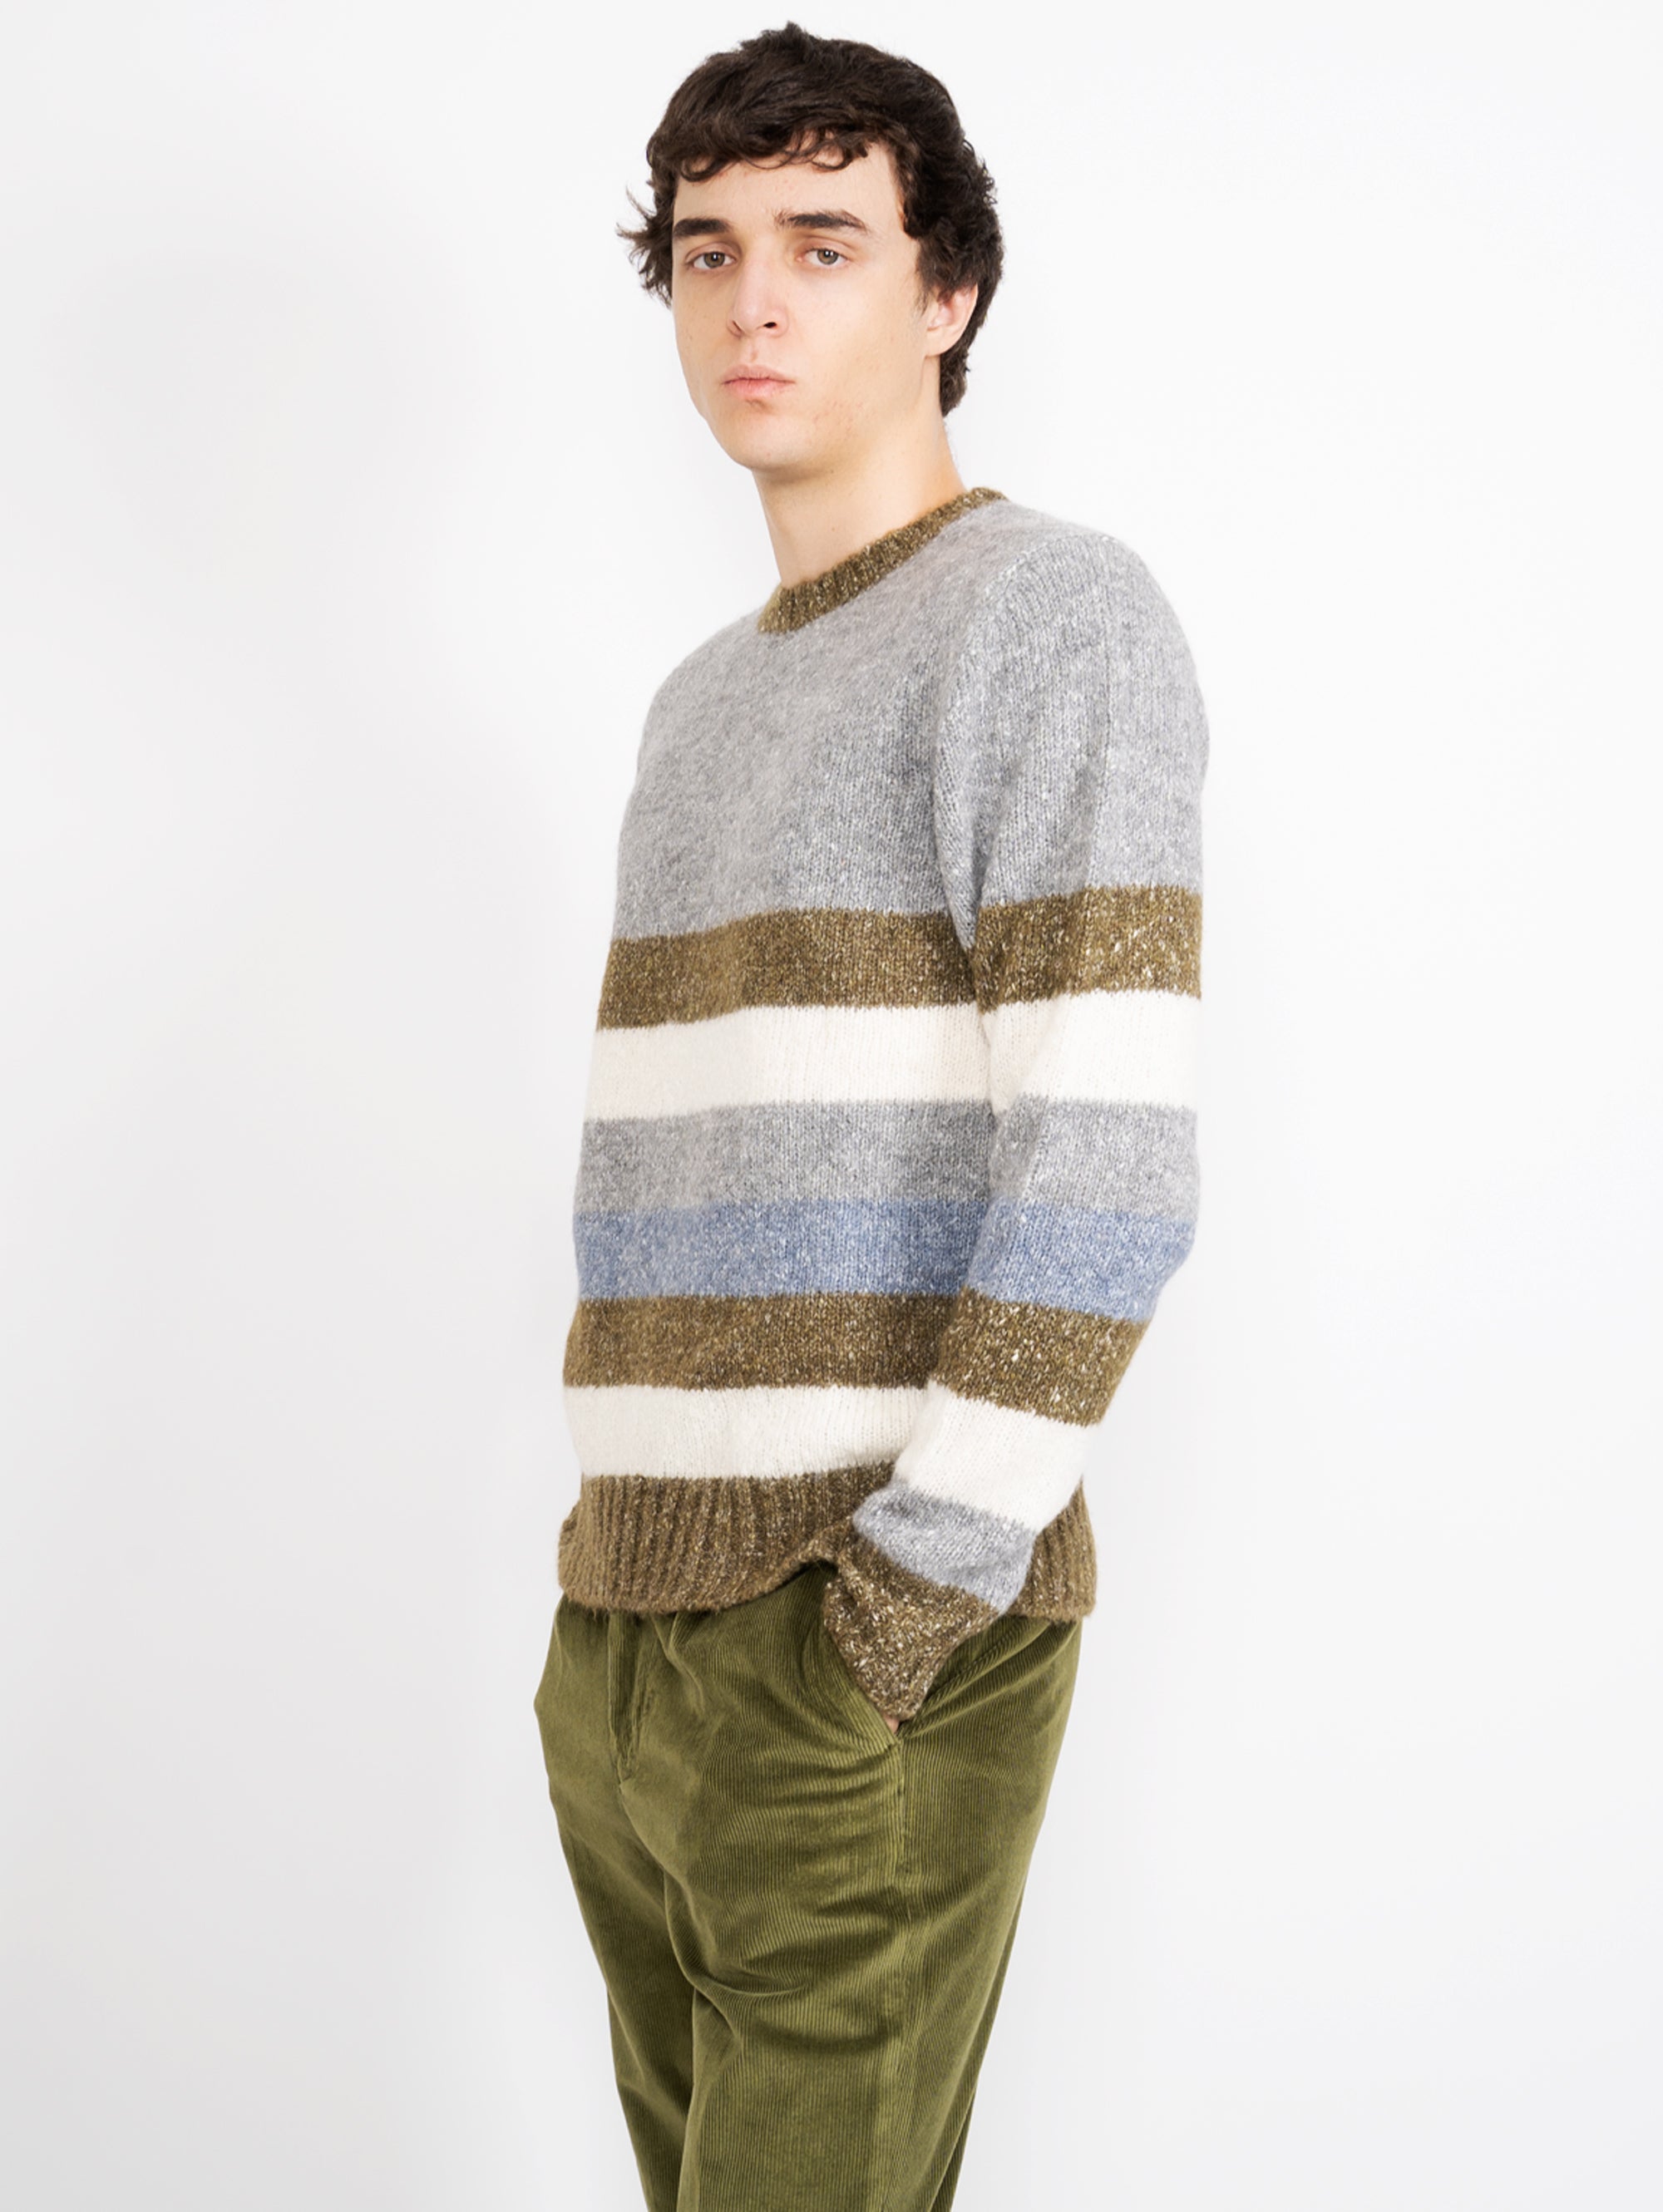 Multicolor Striped Sweater